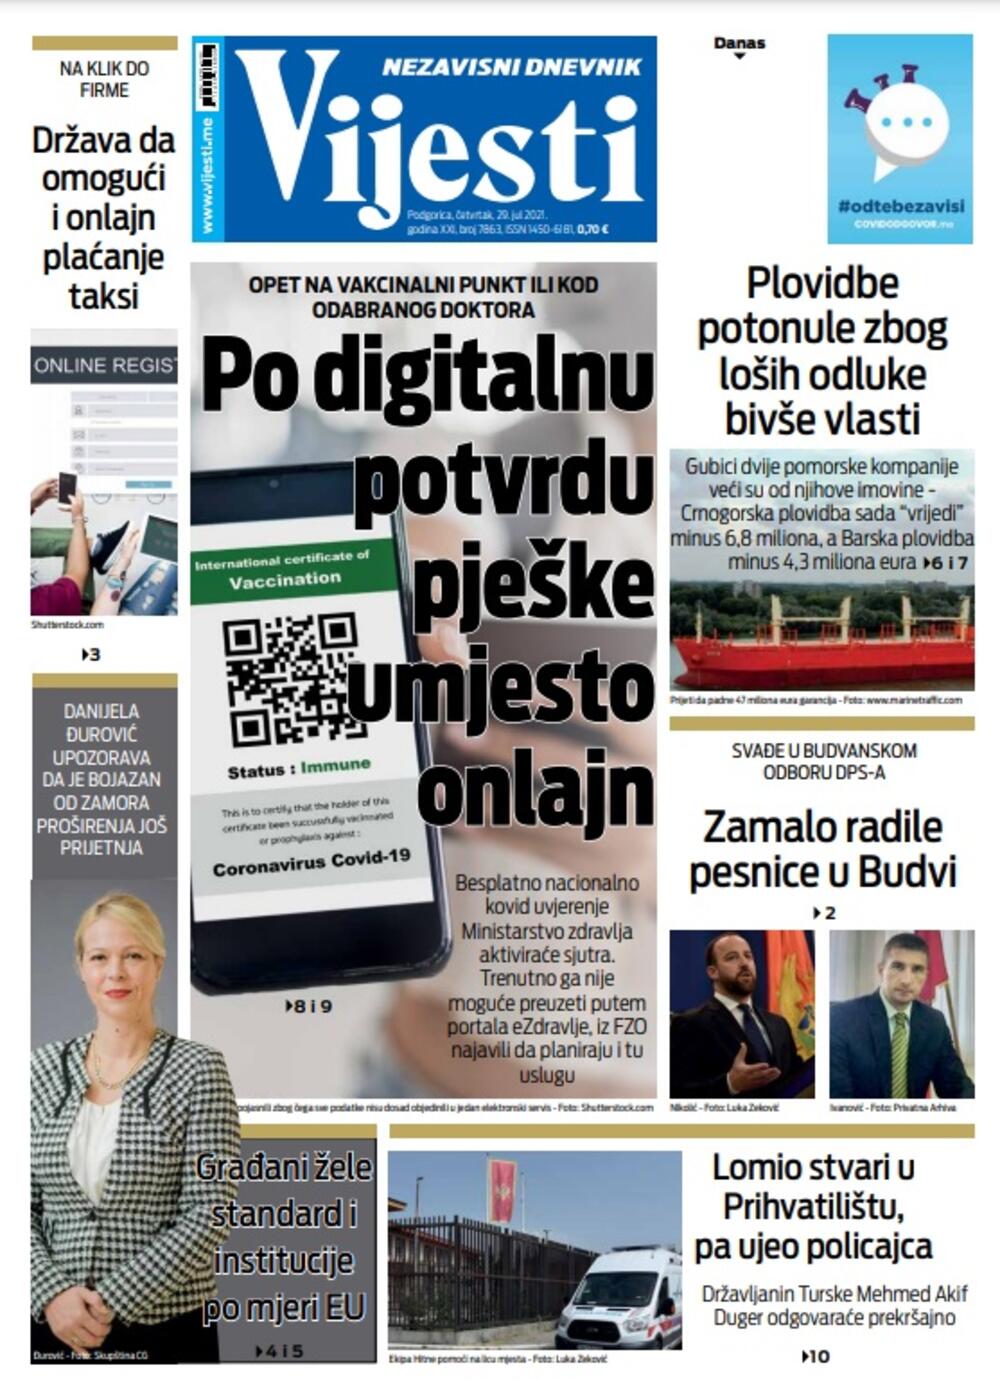 Naslovna strana "Vijesti" za 29. jul 2021., Foto: Vijesti